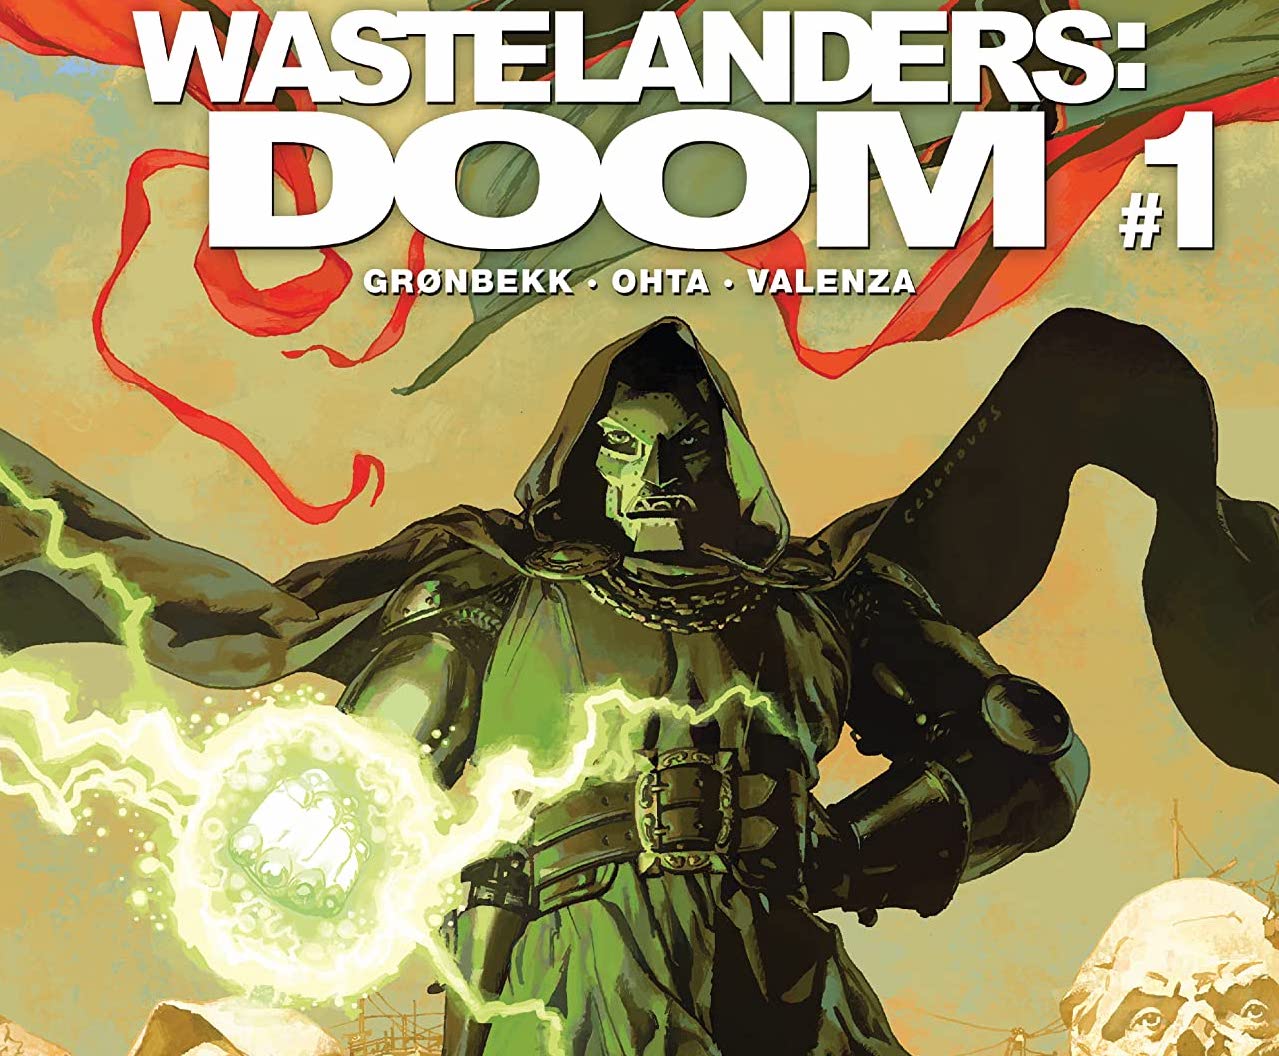 'Wastelanders: Doom' #1 features great Dr. Doom characterization